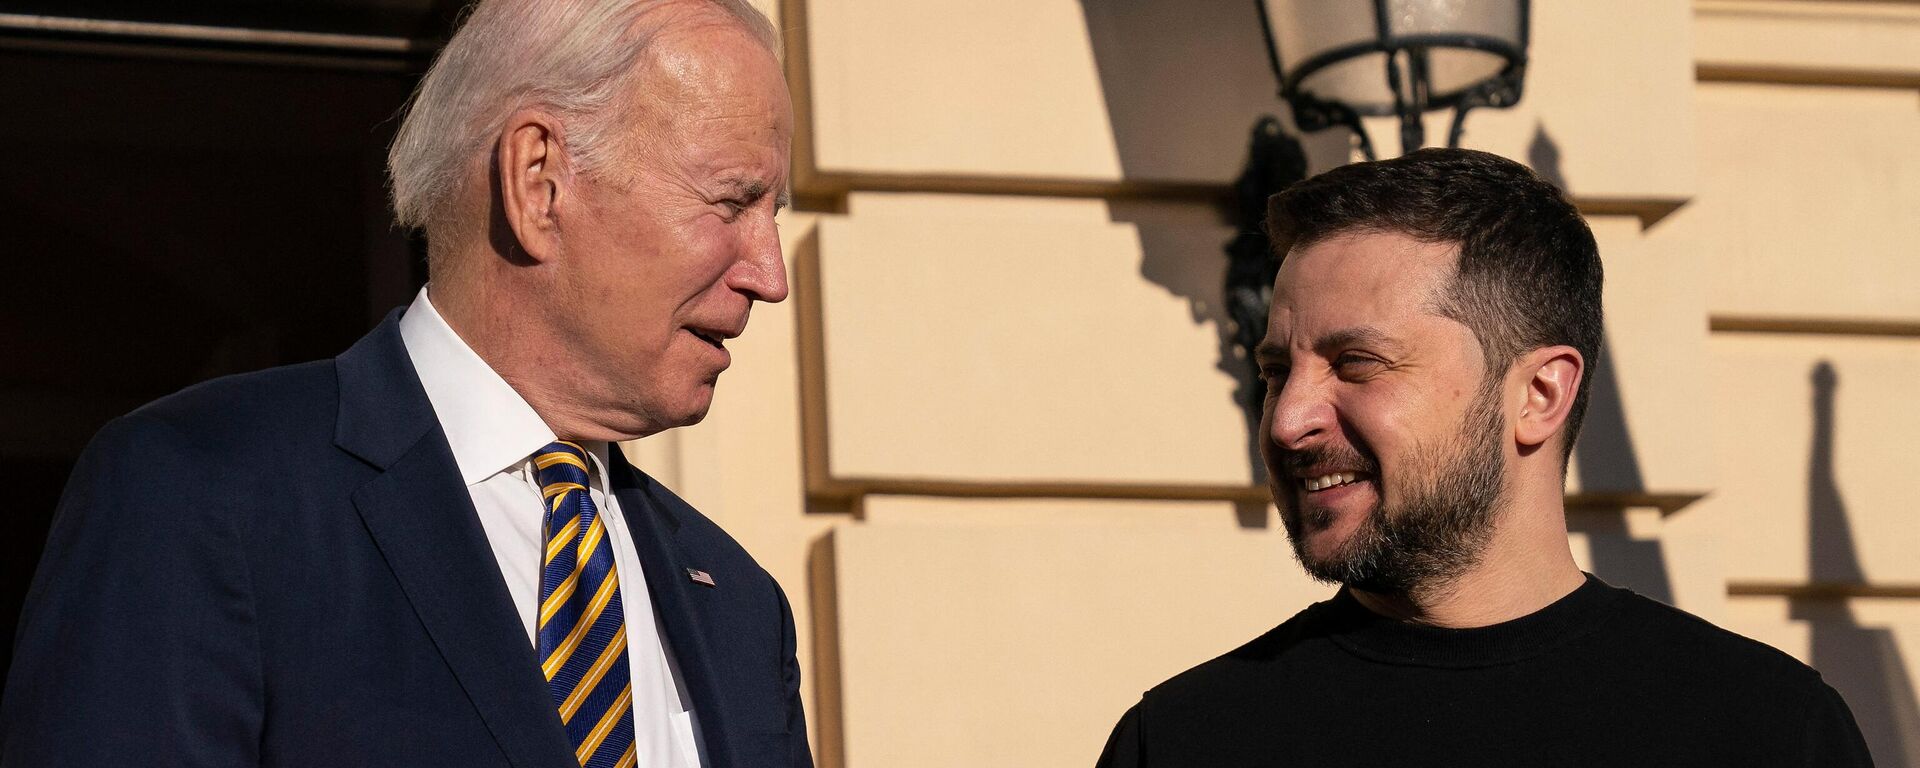 زيارة الرئيس الأمريكي جو بايدن إلى كييف للقاء الرئيس الأوكراني فلاديمير زيلينسكي، 20 فبراير 2023 - سبوتنيك عربي, 1920, 23.09.2023